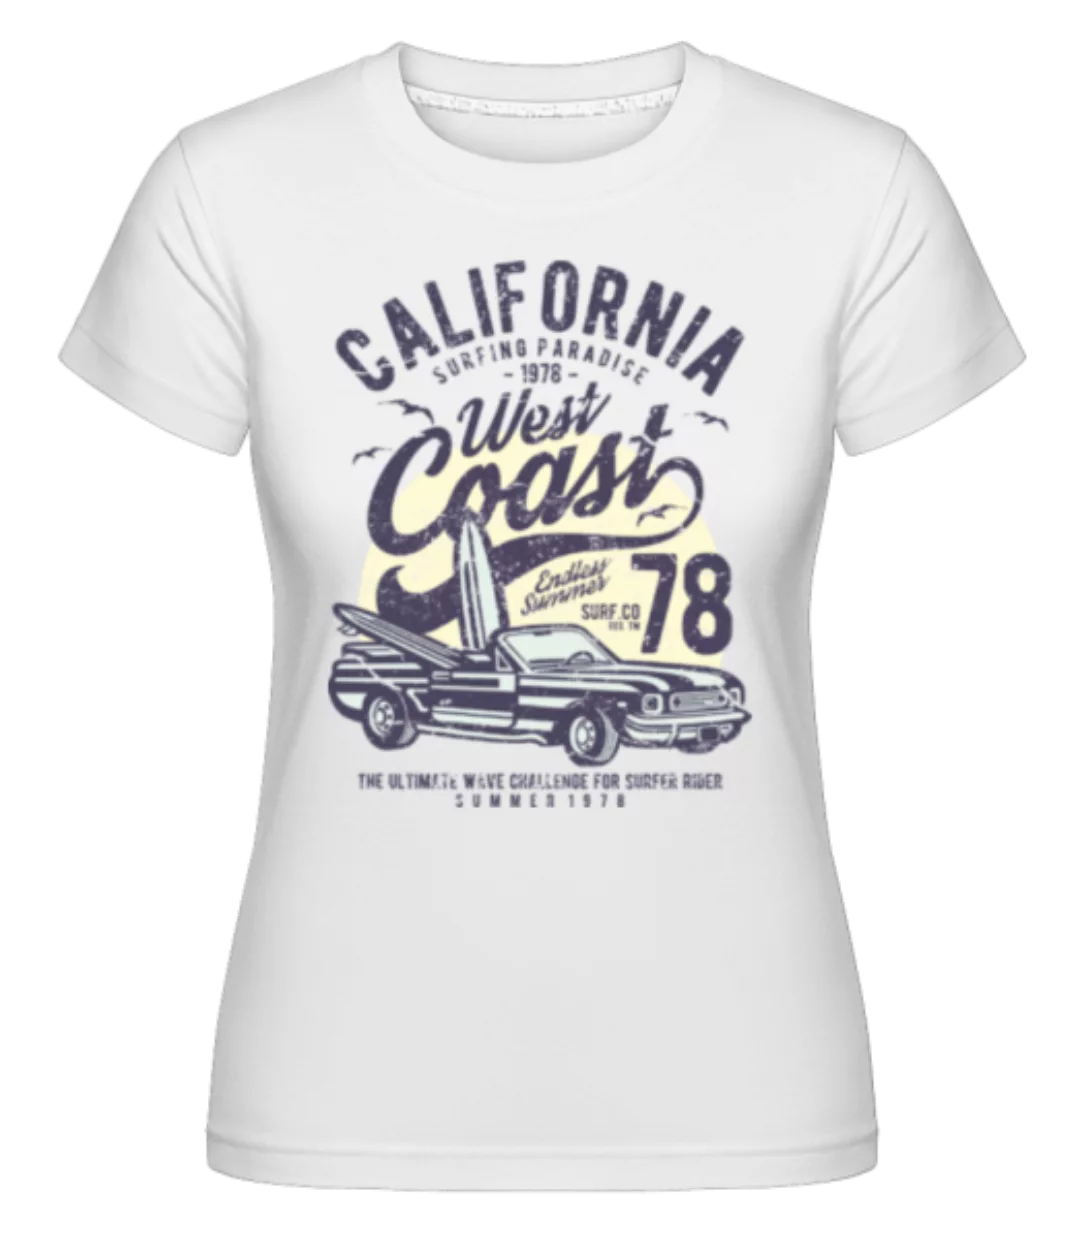 California West Coast · Shirtinator Frauen T-Shirt günstig online kaufen